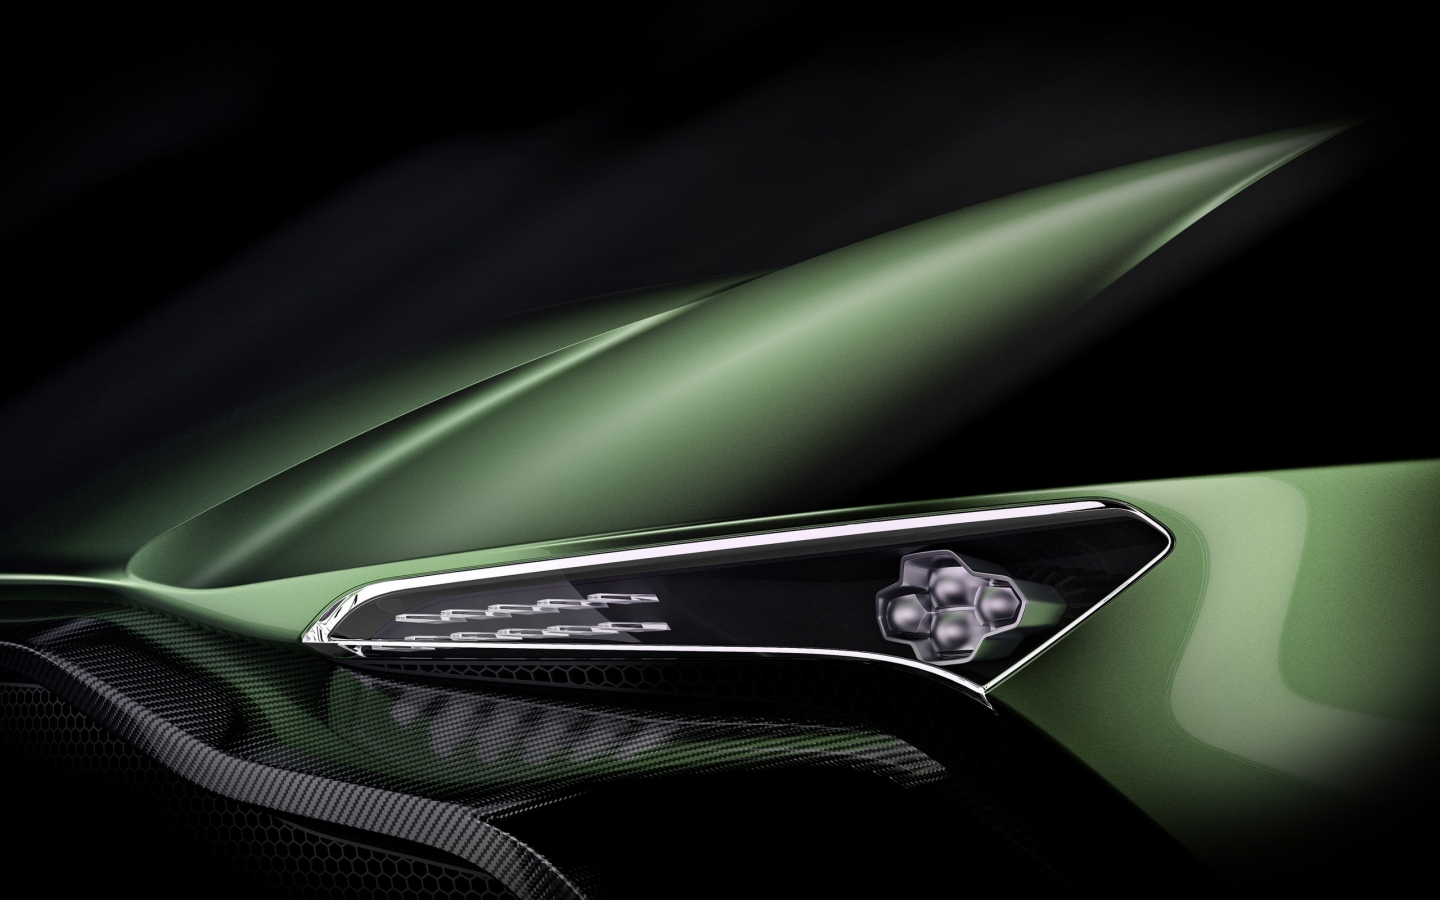 Aston Martin Vulcan Headlight for 1440 x 900 widescreen resolution